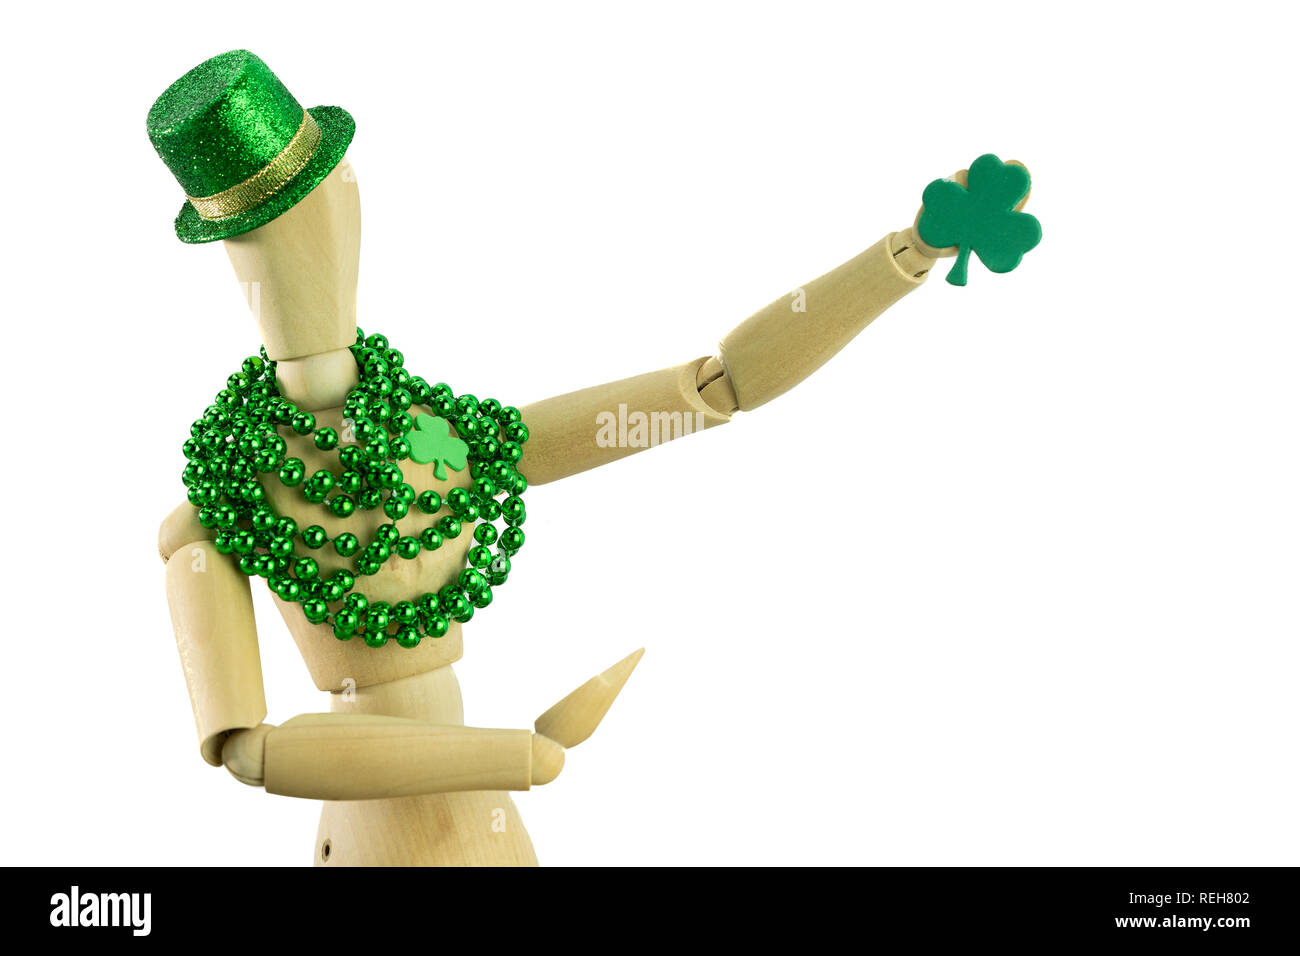 Isolierte St Patrick's Day mannequin mit einem shamrock Herzen grün Glitzer hut und einem anderen shamrock Holding Stockfoto